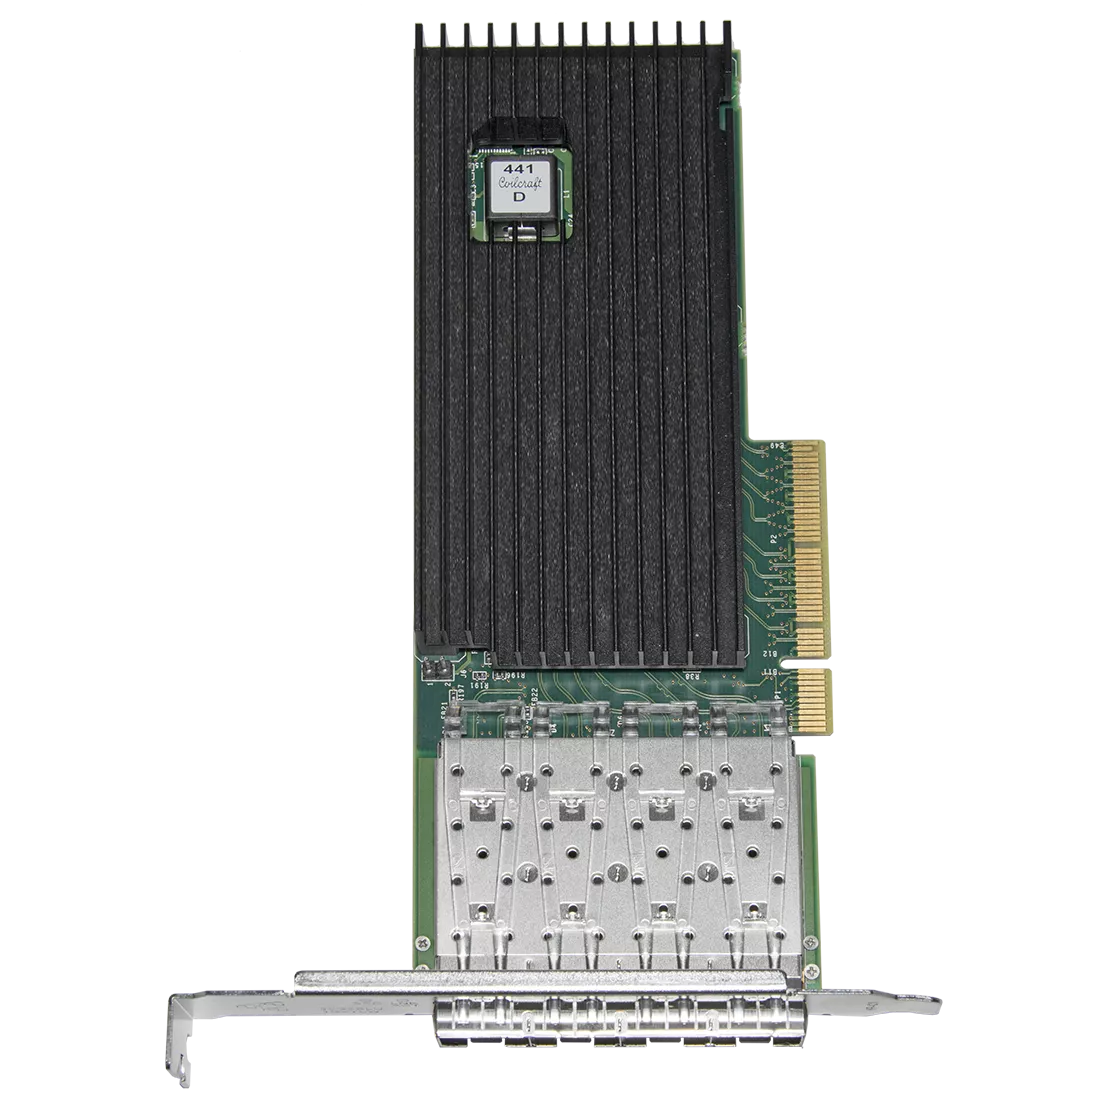 Сетевая карта 4 порта 10GBase-X (SFP+, Intel FTXL710AM1), Silicom PE310G4i71L-XR